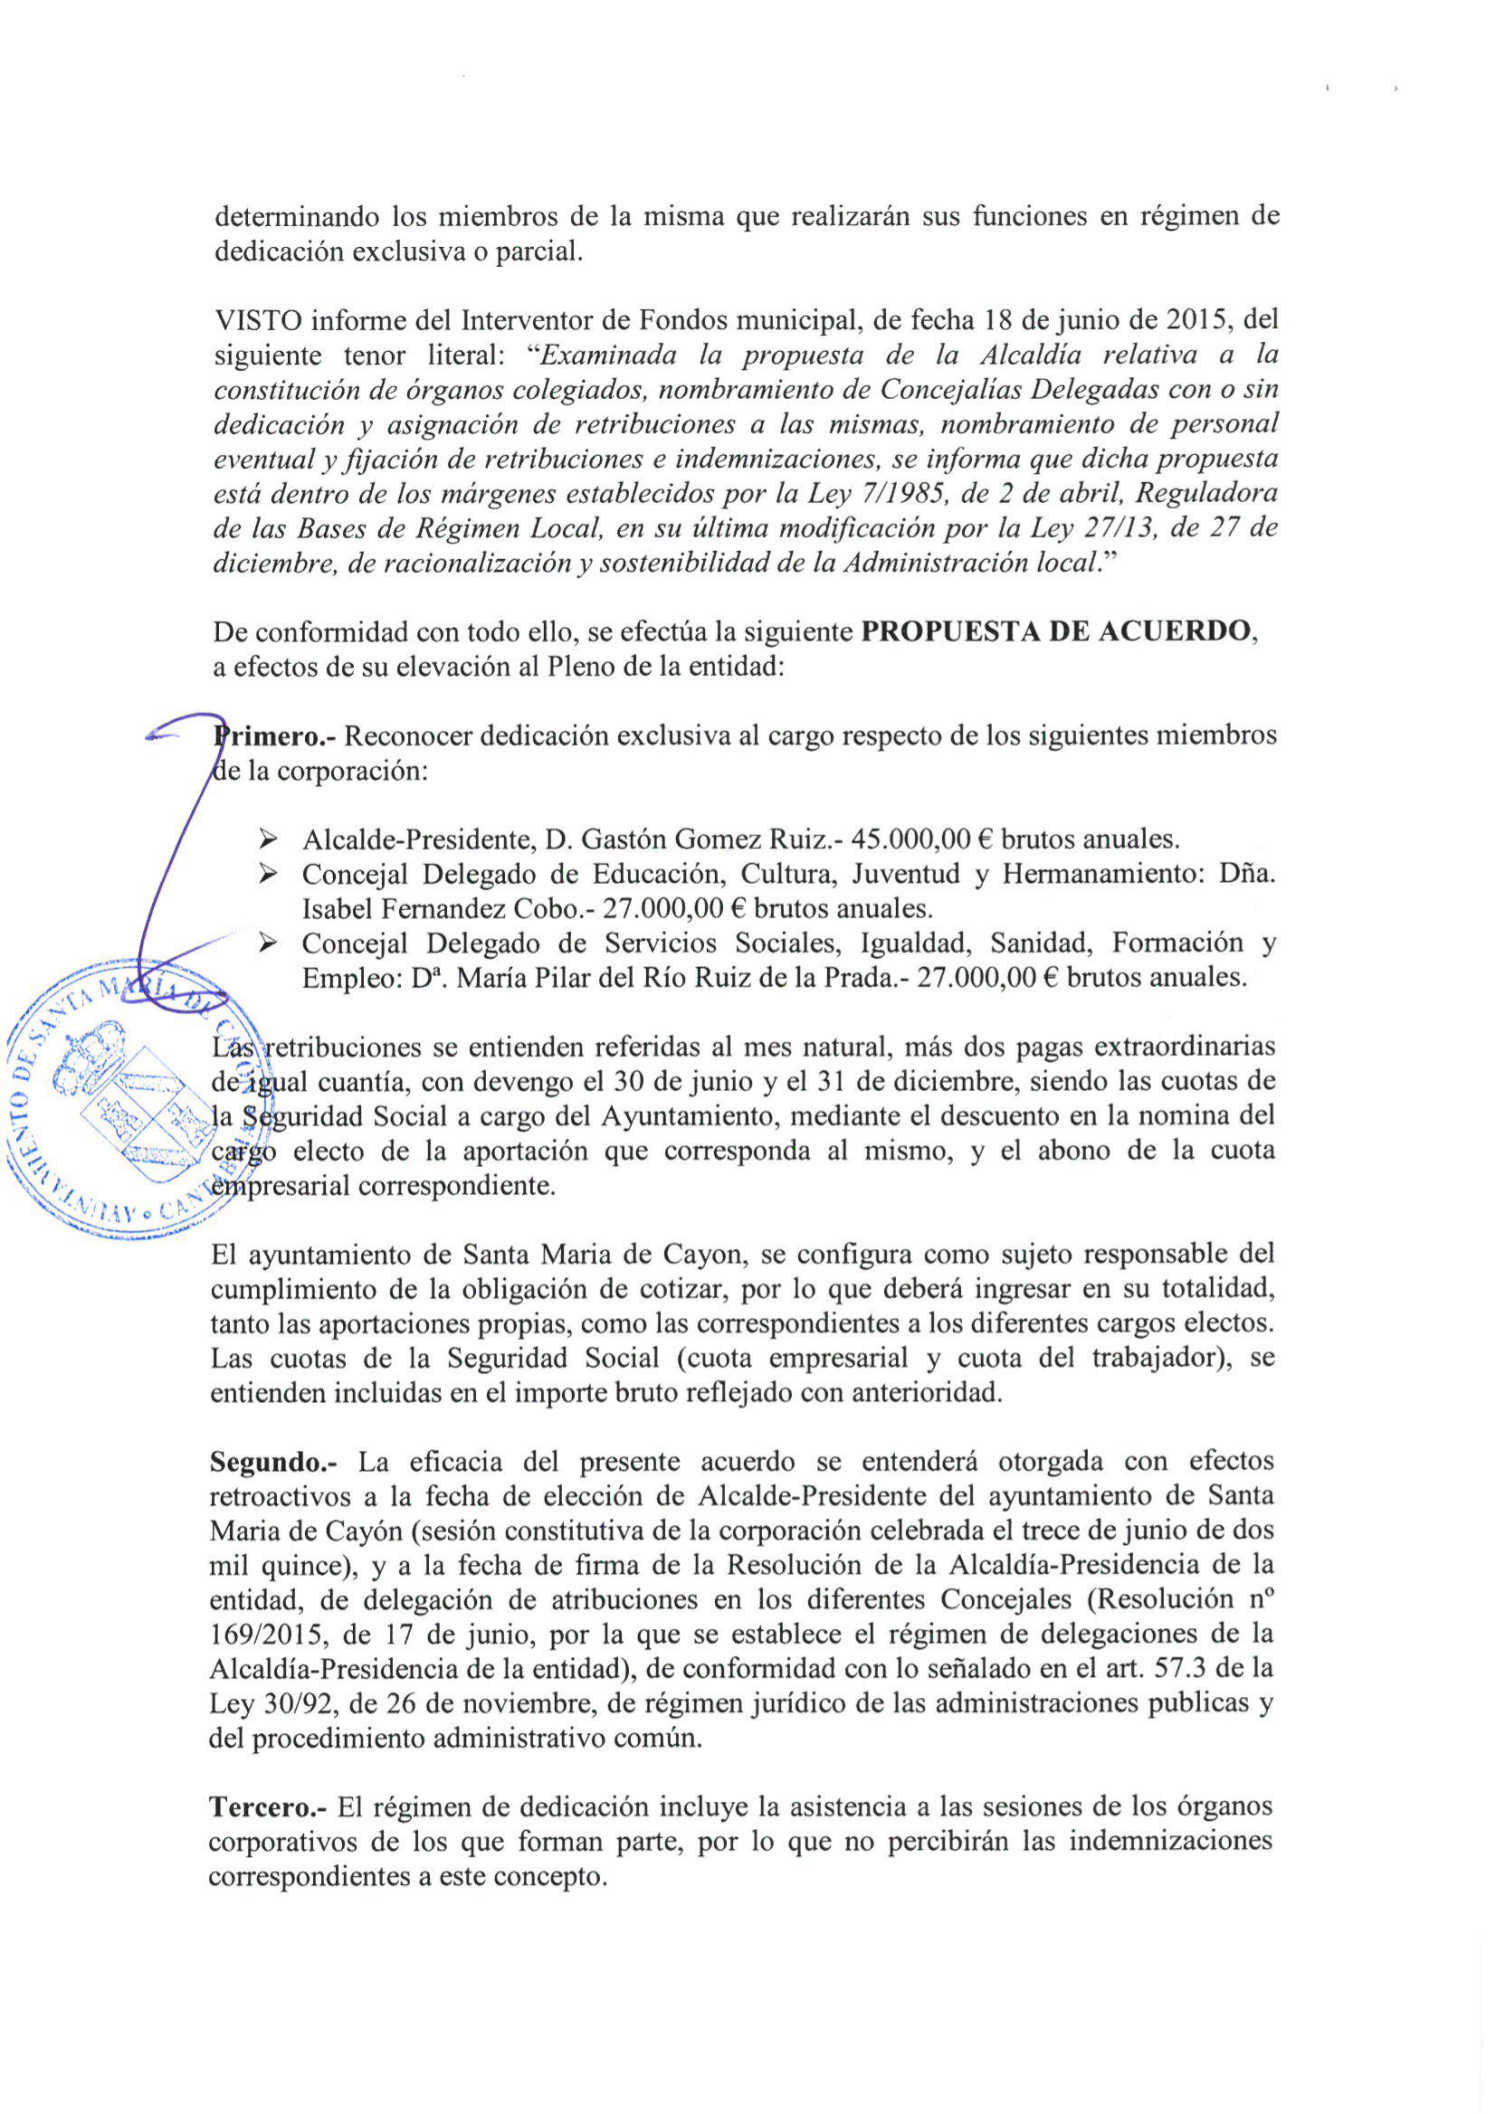 Página del acta del pleno de 2015 en el que se detallan los concejales liberados de Santa María de Cayón